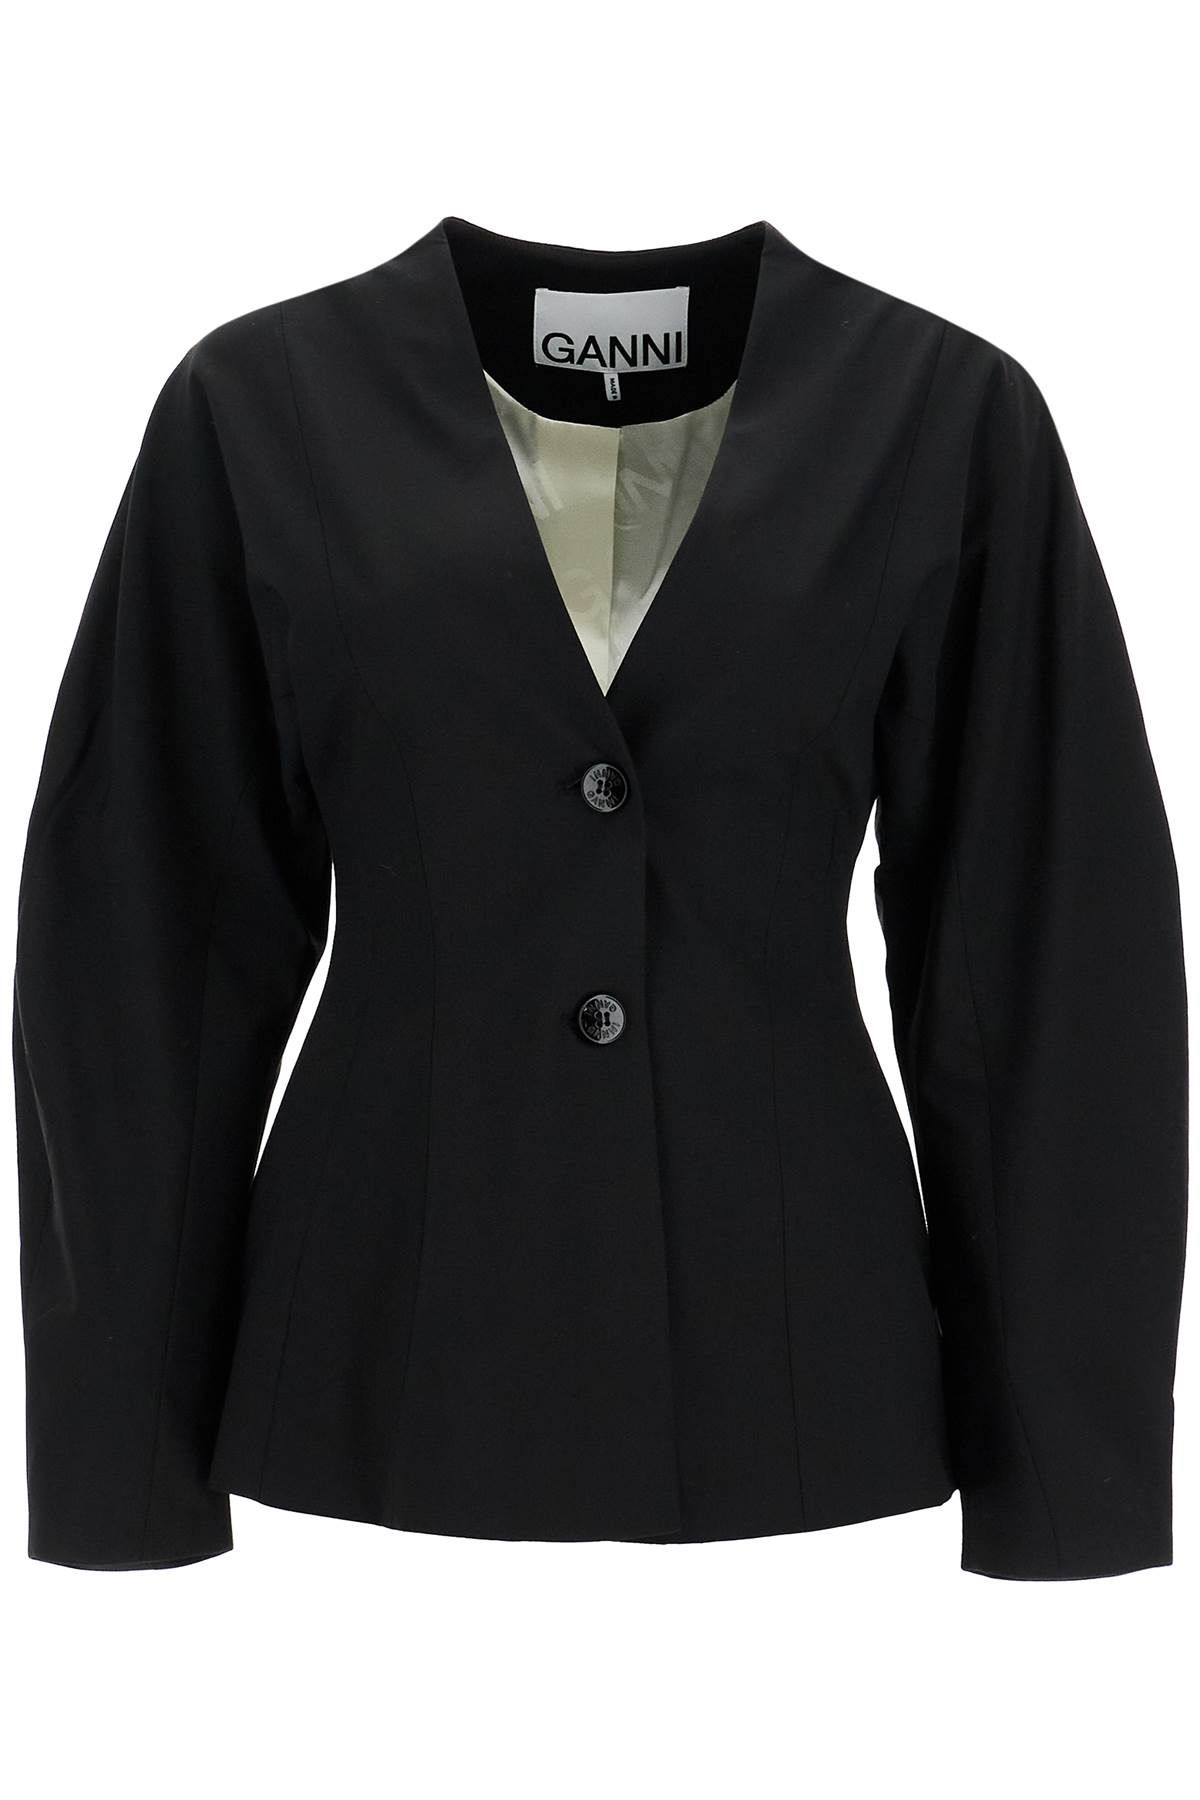 Ganni GANNI lightweight fitted jacket